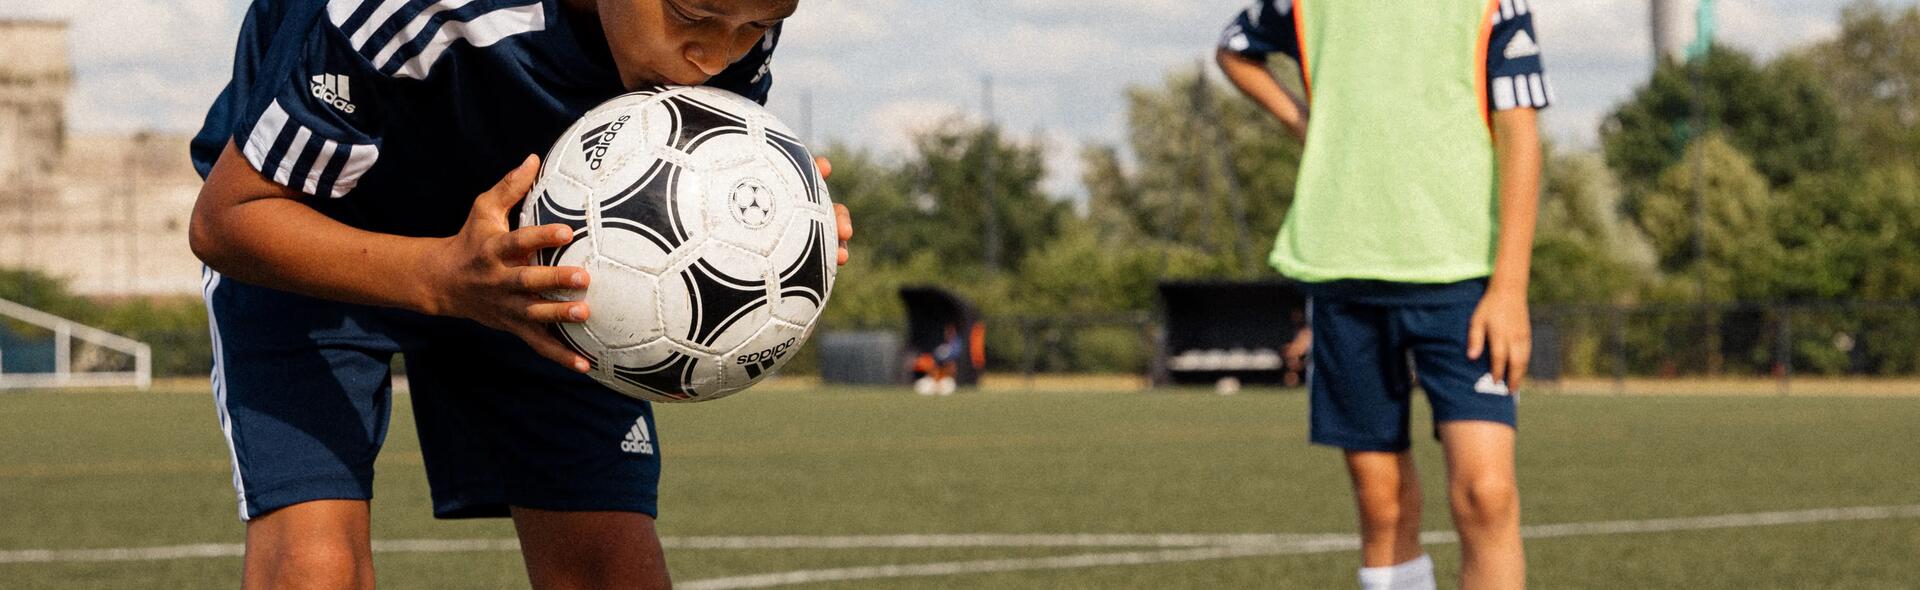 chłopiec w stroju piłkarskim trzymający piłkę do piłki nożnej